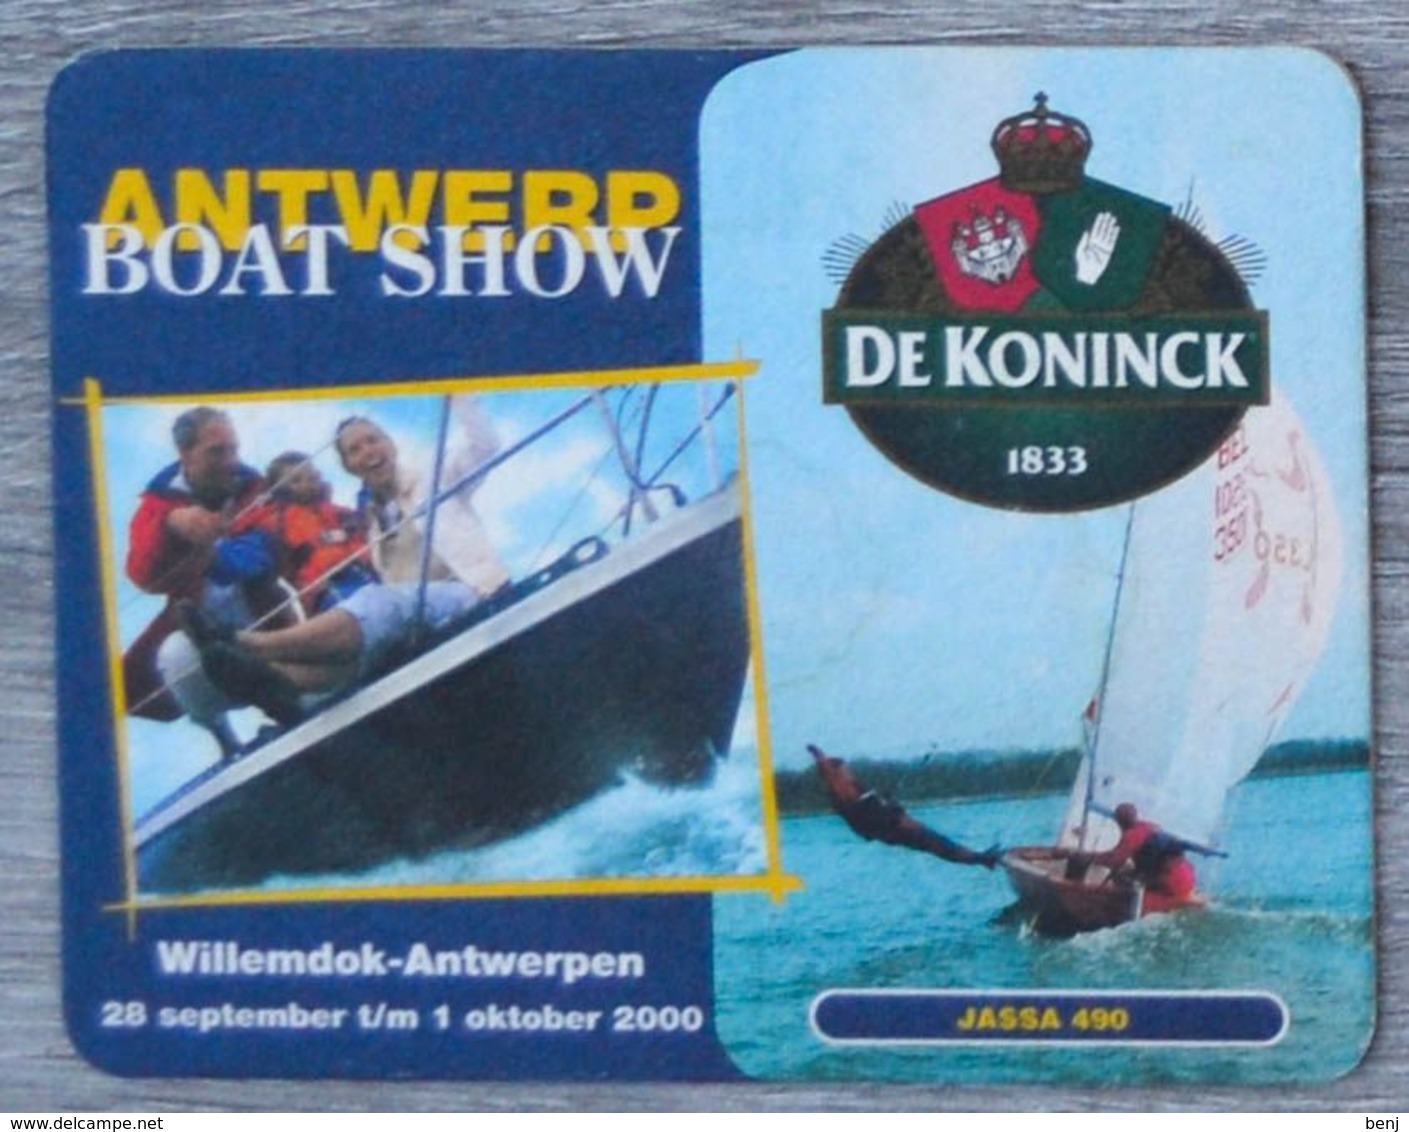 Sous-bock DE KONINCK Antwerp Boat Show Willemdok-Antwerpen 2000 Anvers Jassa 490 Bierdeckel Bierviltje Coaster (CX) - Portavasos